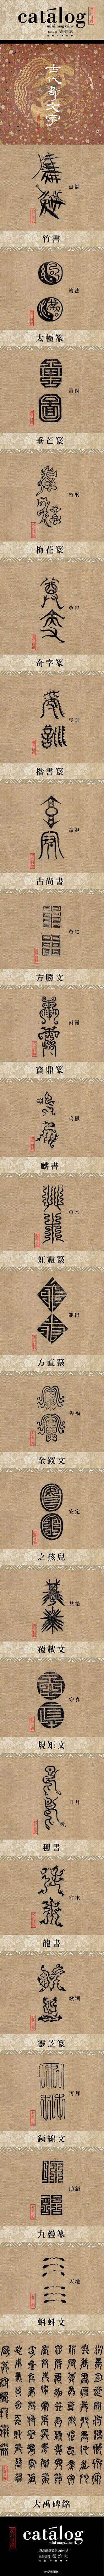 古代奇文字 | 中國古代文字演變是一個漫...